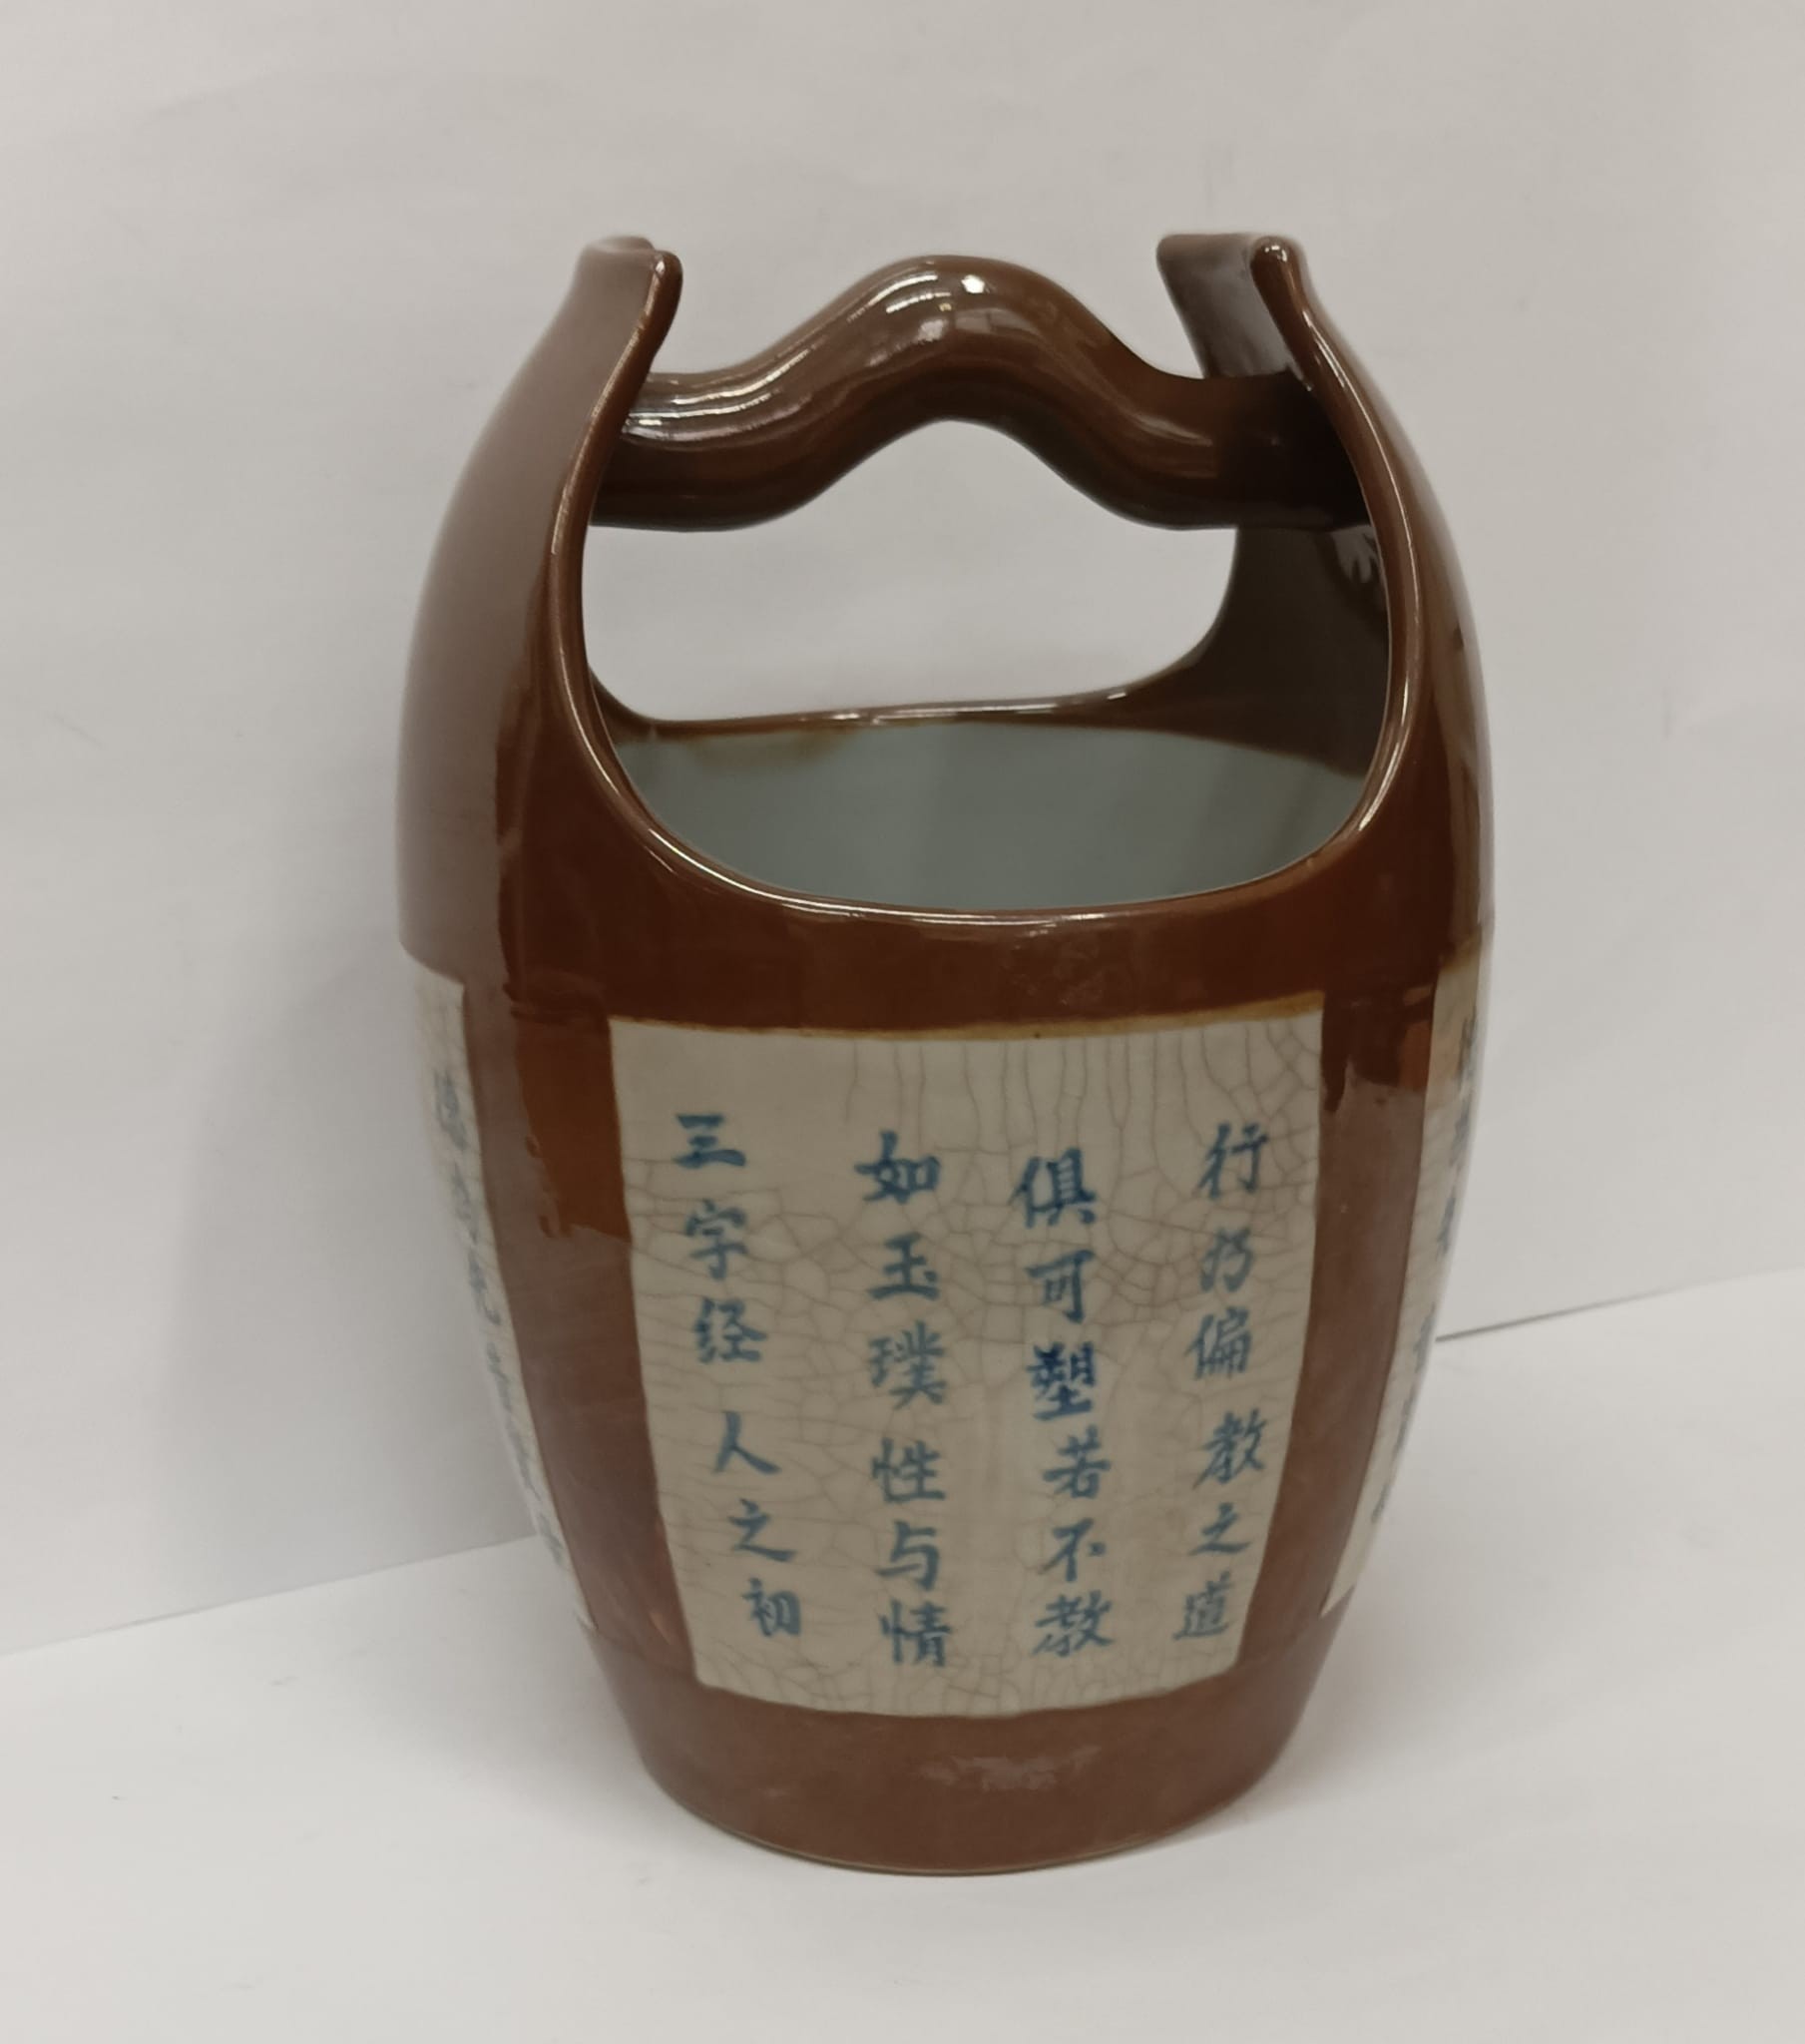 Recipiente em forma de celha com reservas com caracteres chineses